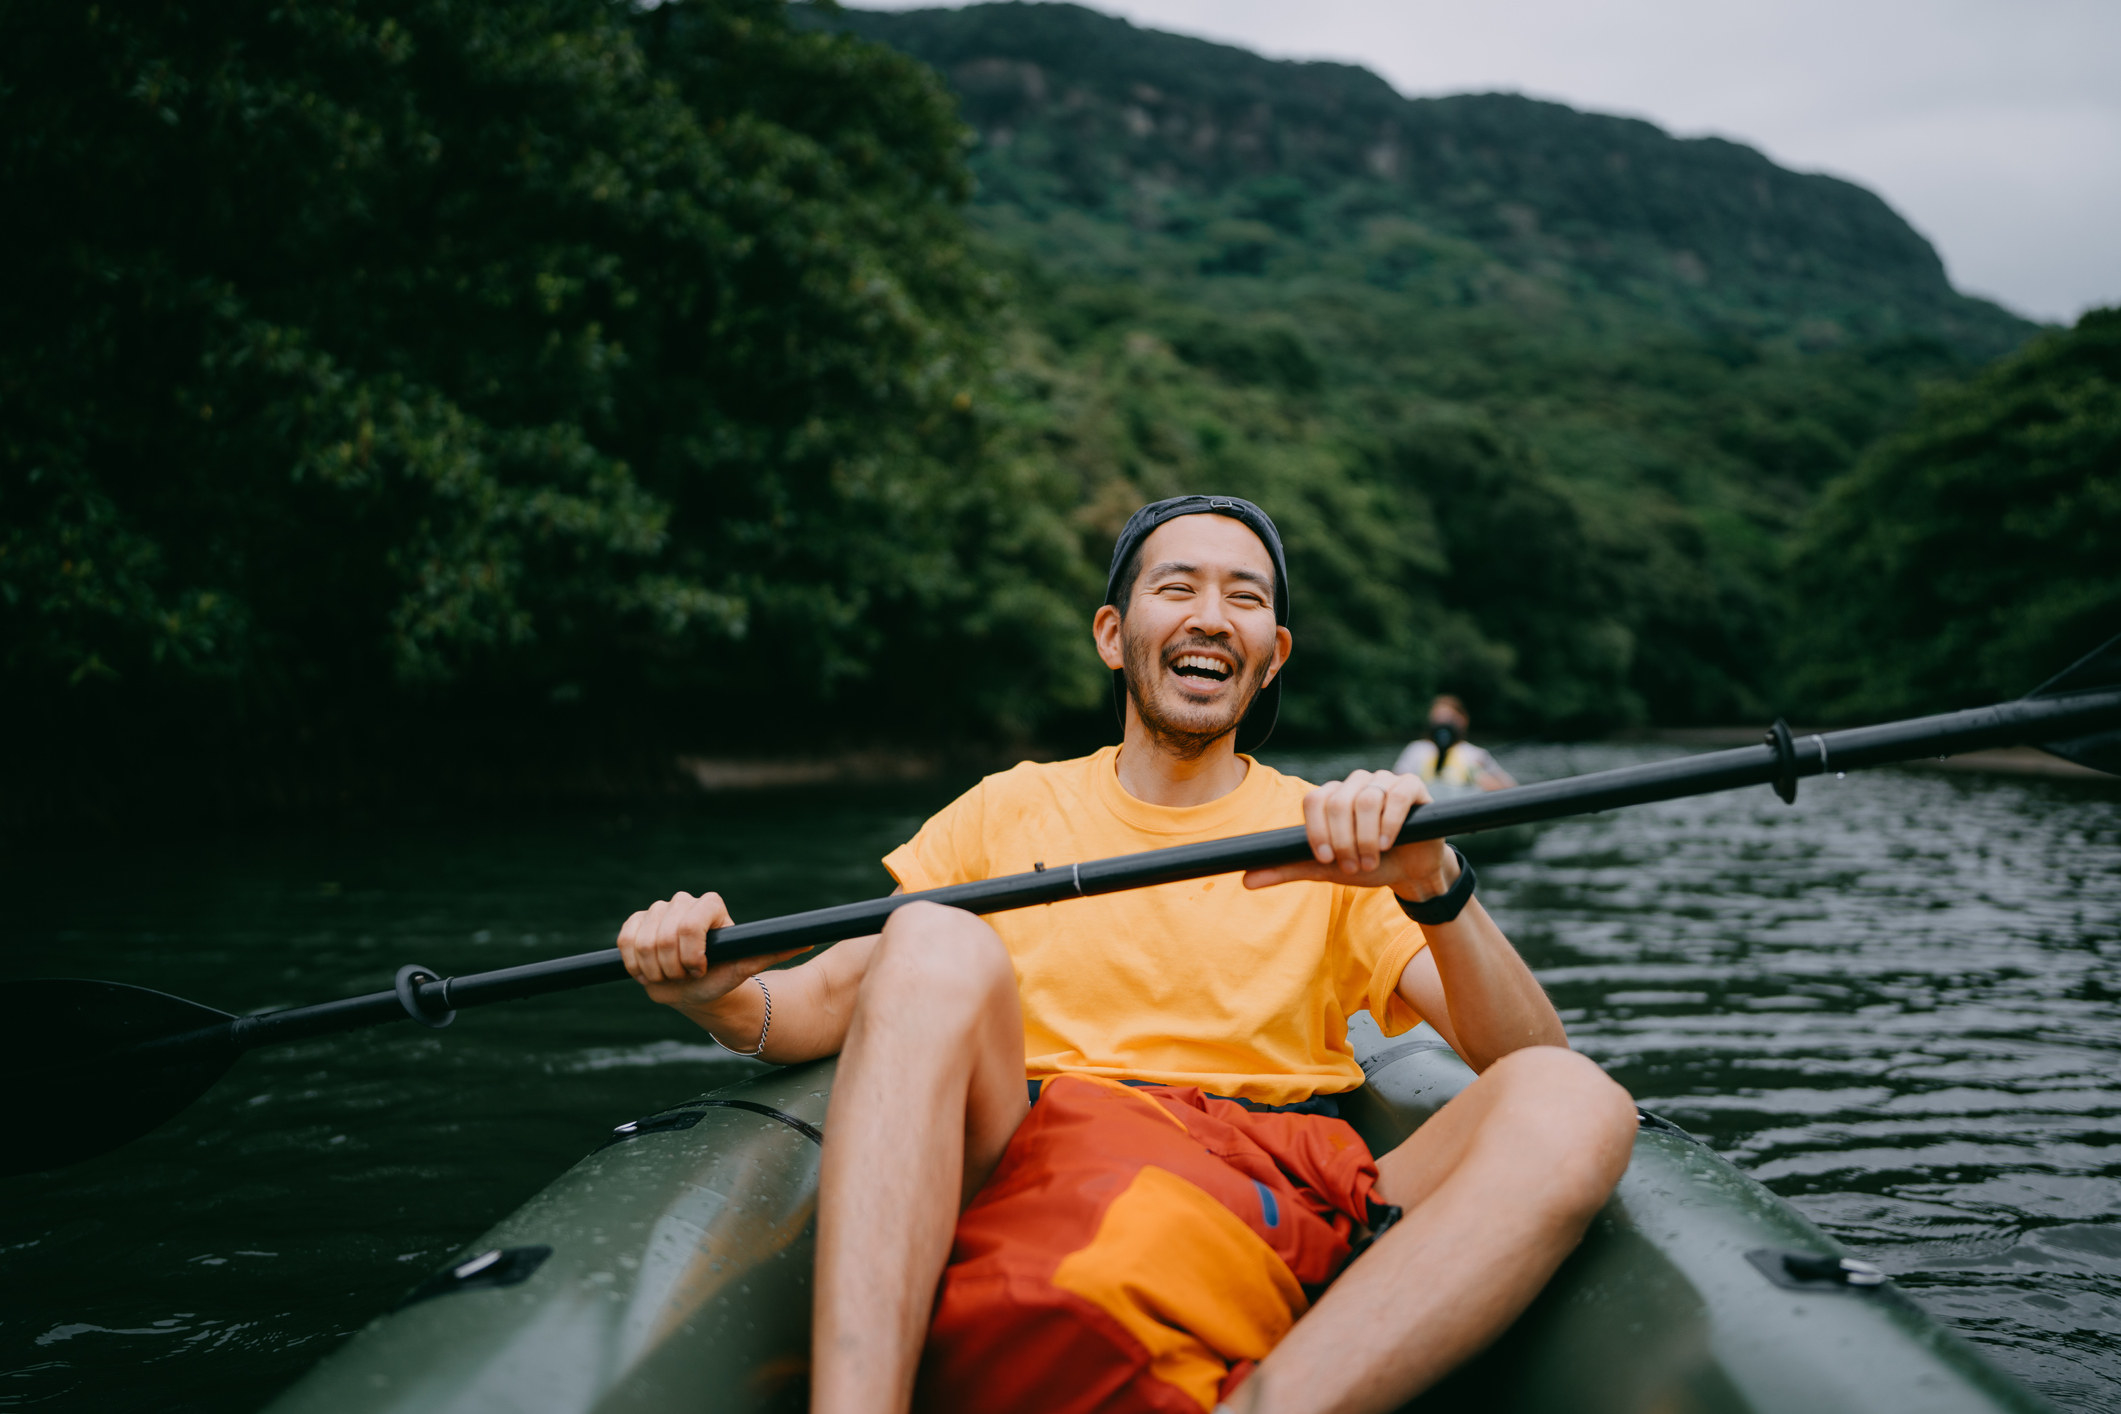 A man on a kayak smiling